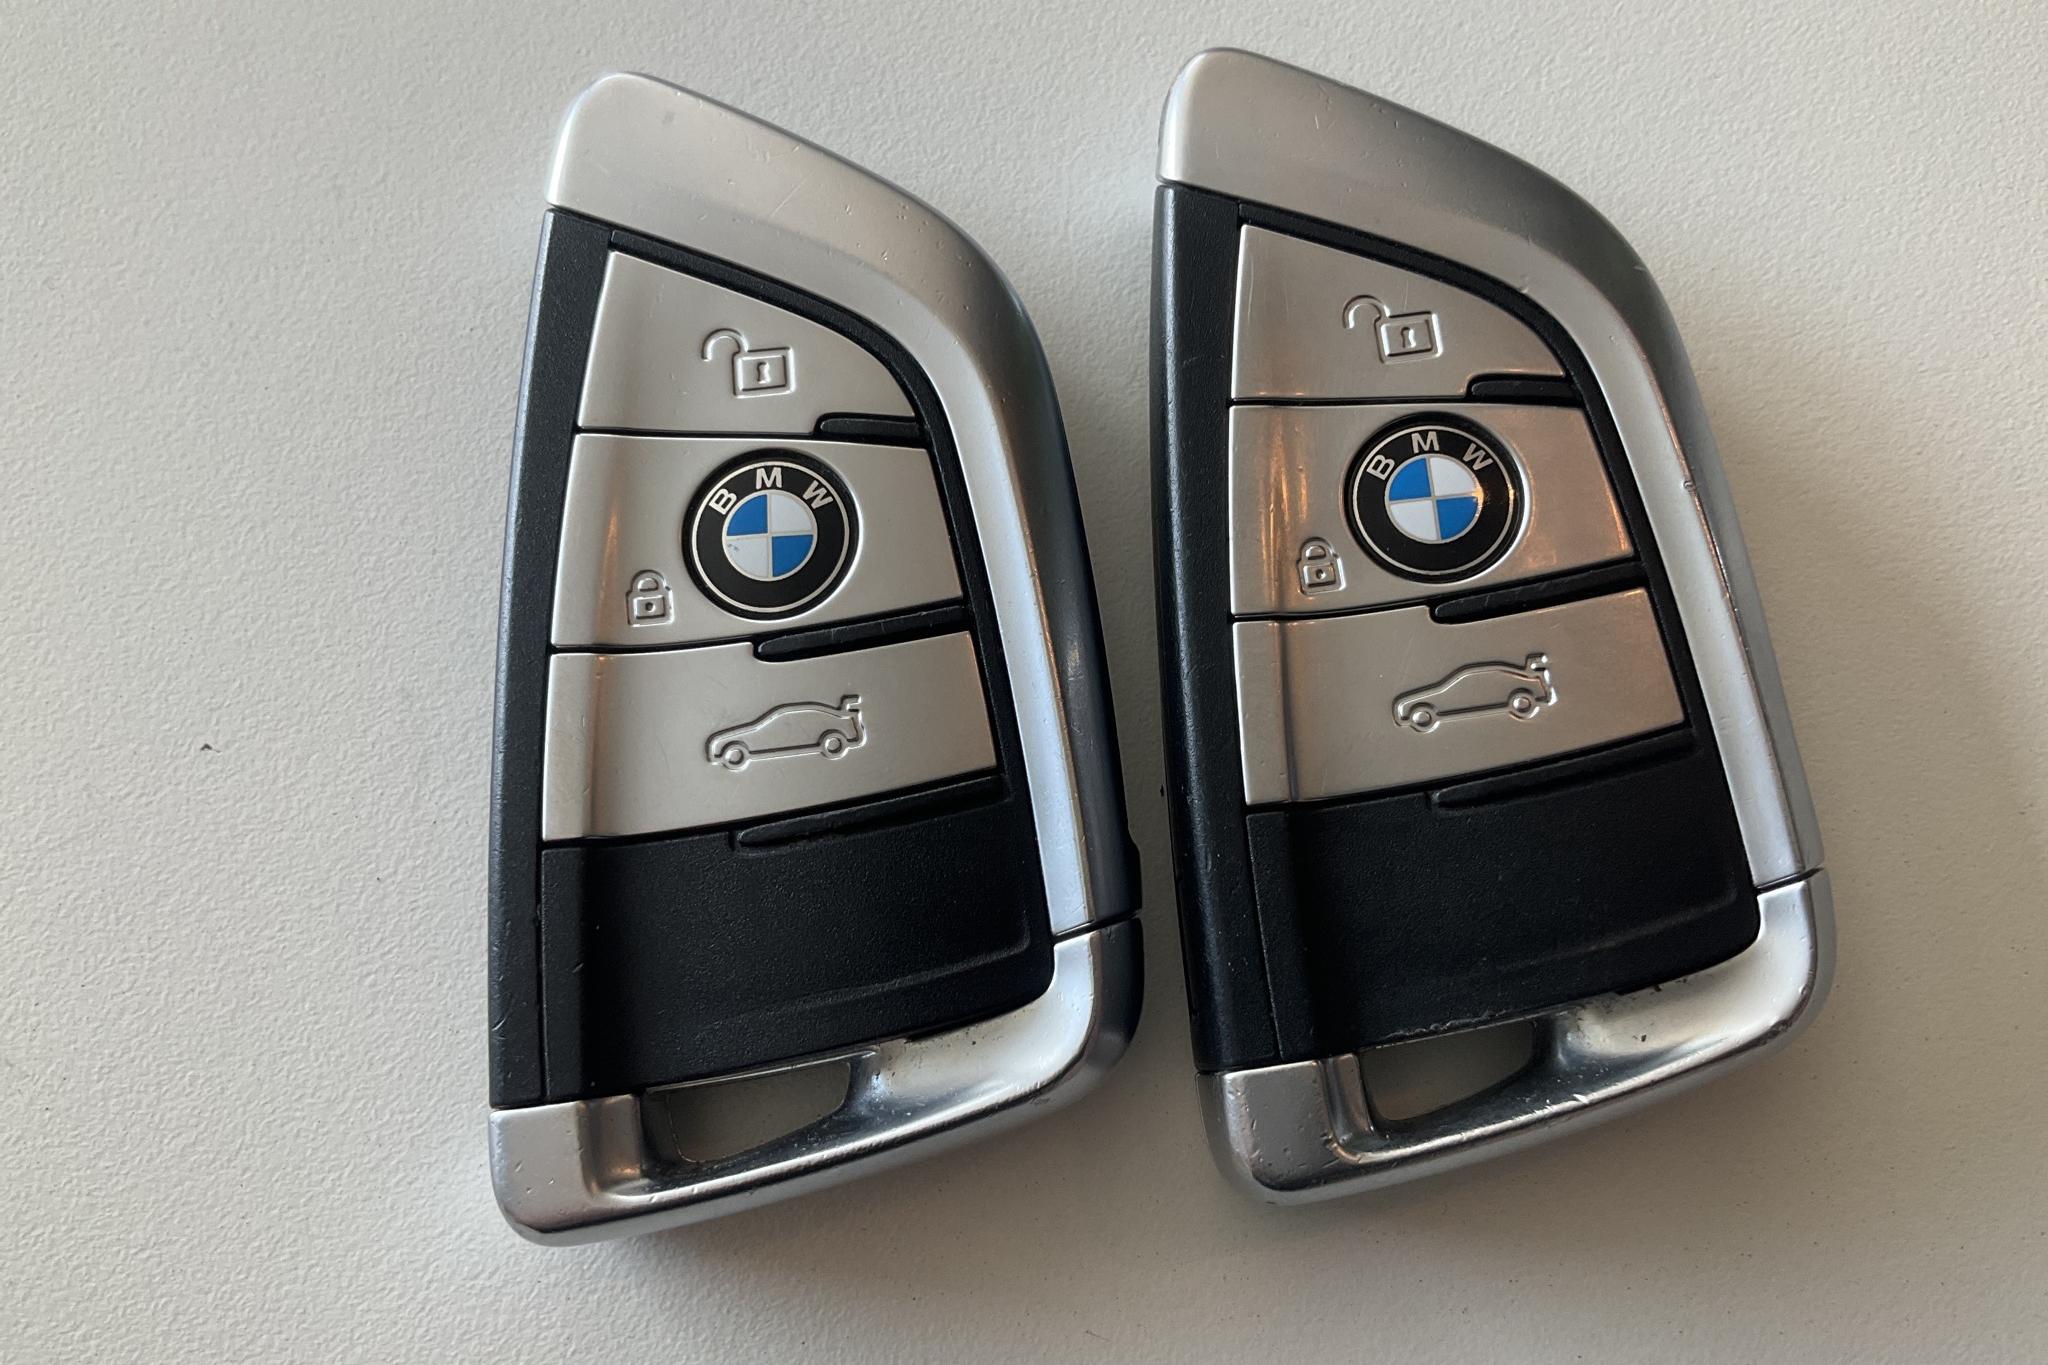 BMW X5 xDrive40e, F15 (313hk) - 104 840 km - Automatic - white - 2017